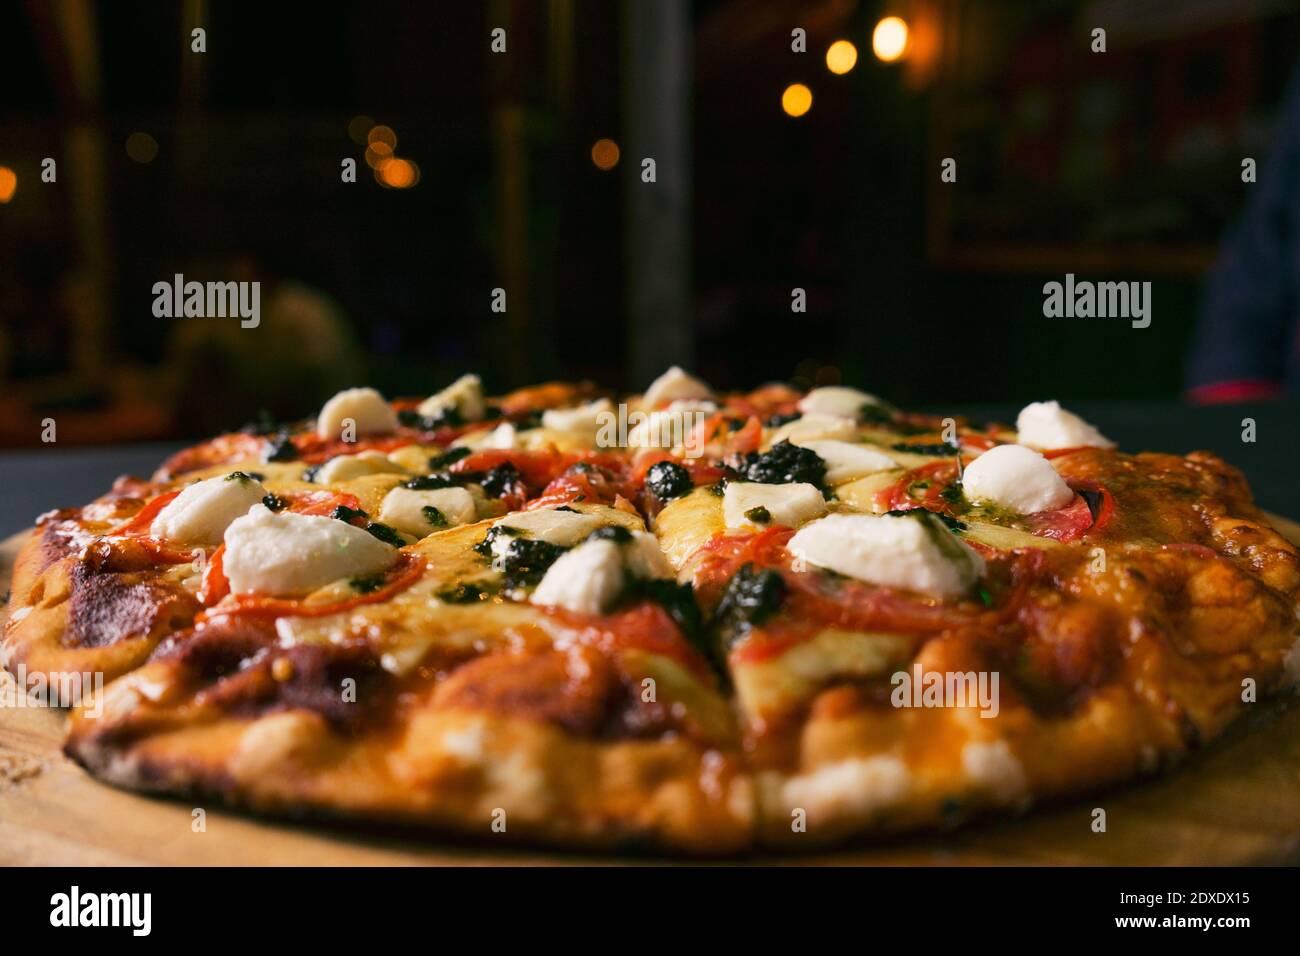 Draufsicht traditionelle italienische Pizza mit grüner Basilikum-Pesto-Sauce Auf einem schwarzen rustikalen Holzhintergrund.Restaurant verwischen Hintergrund Stockfoto